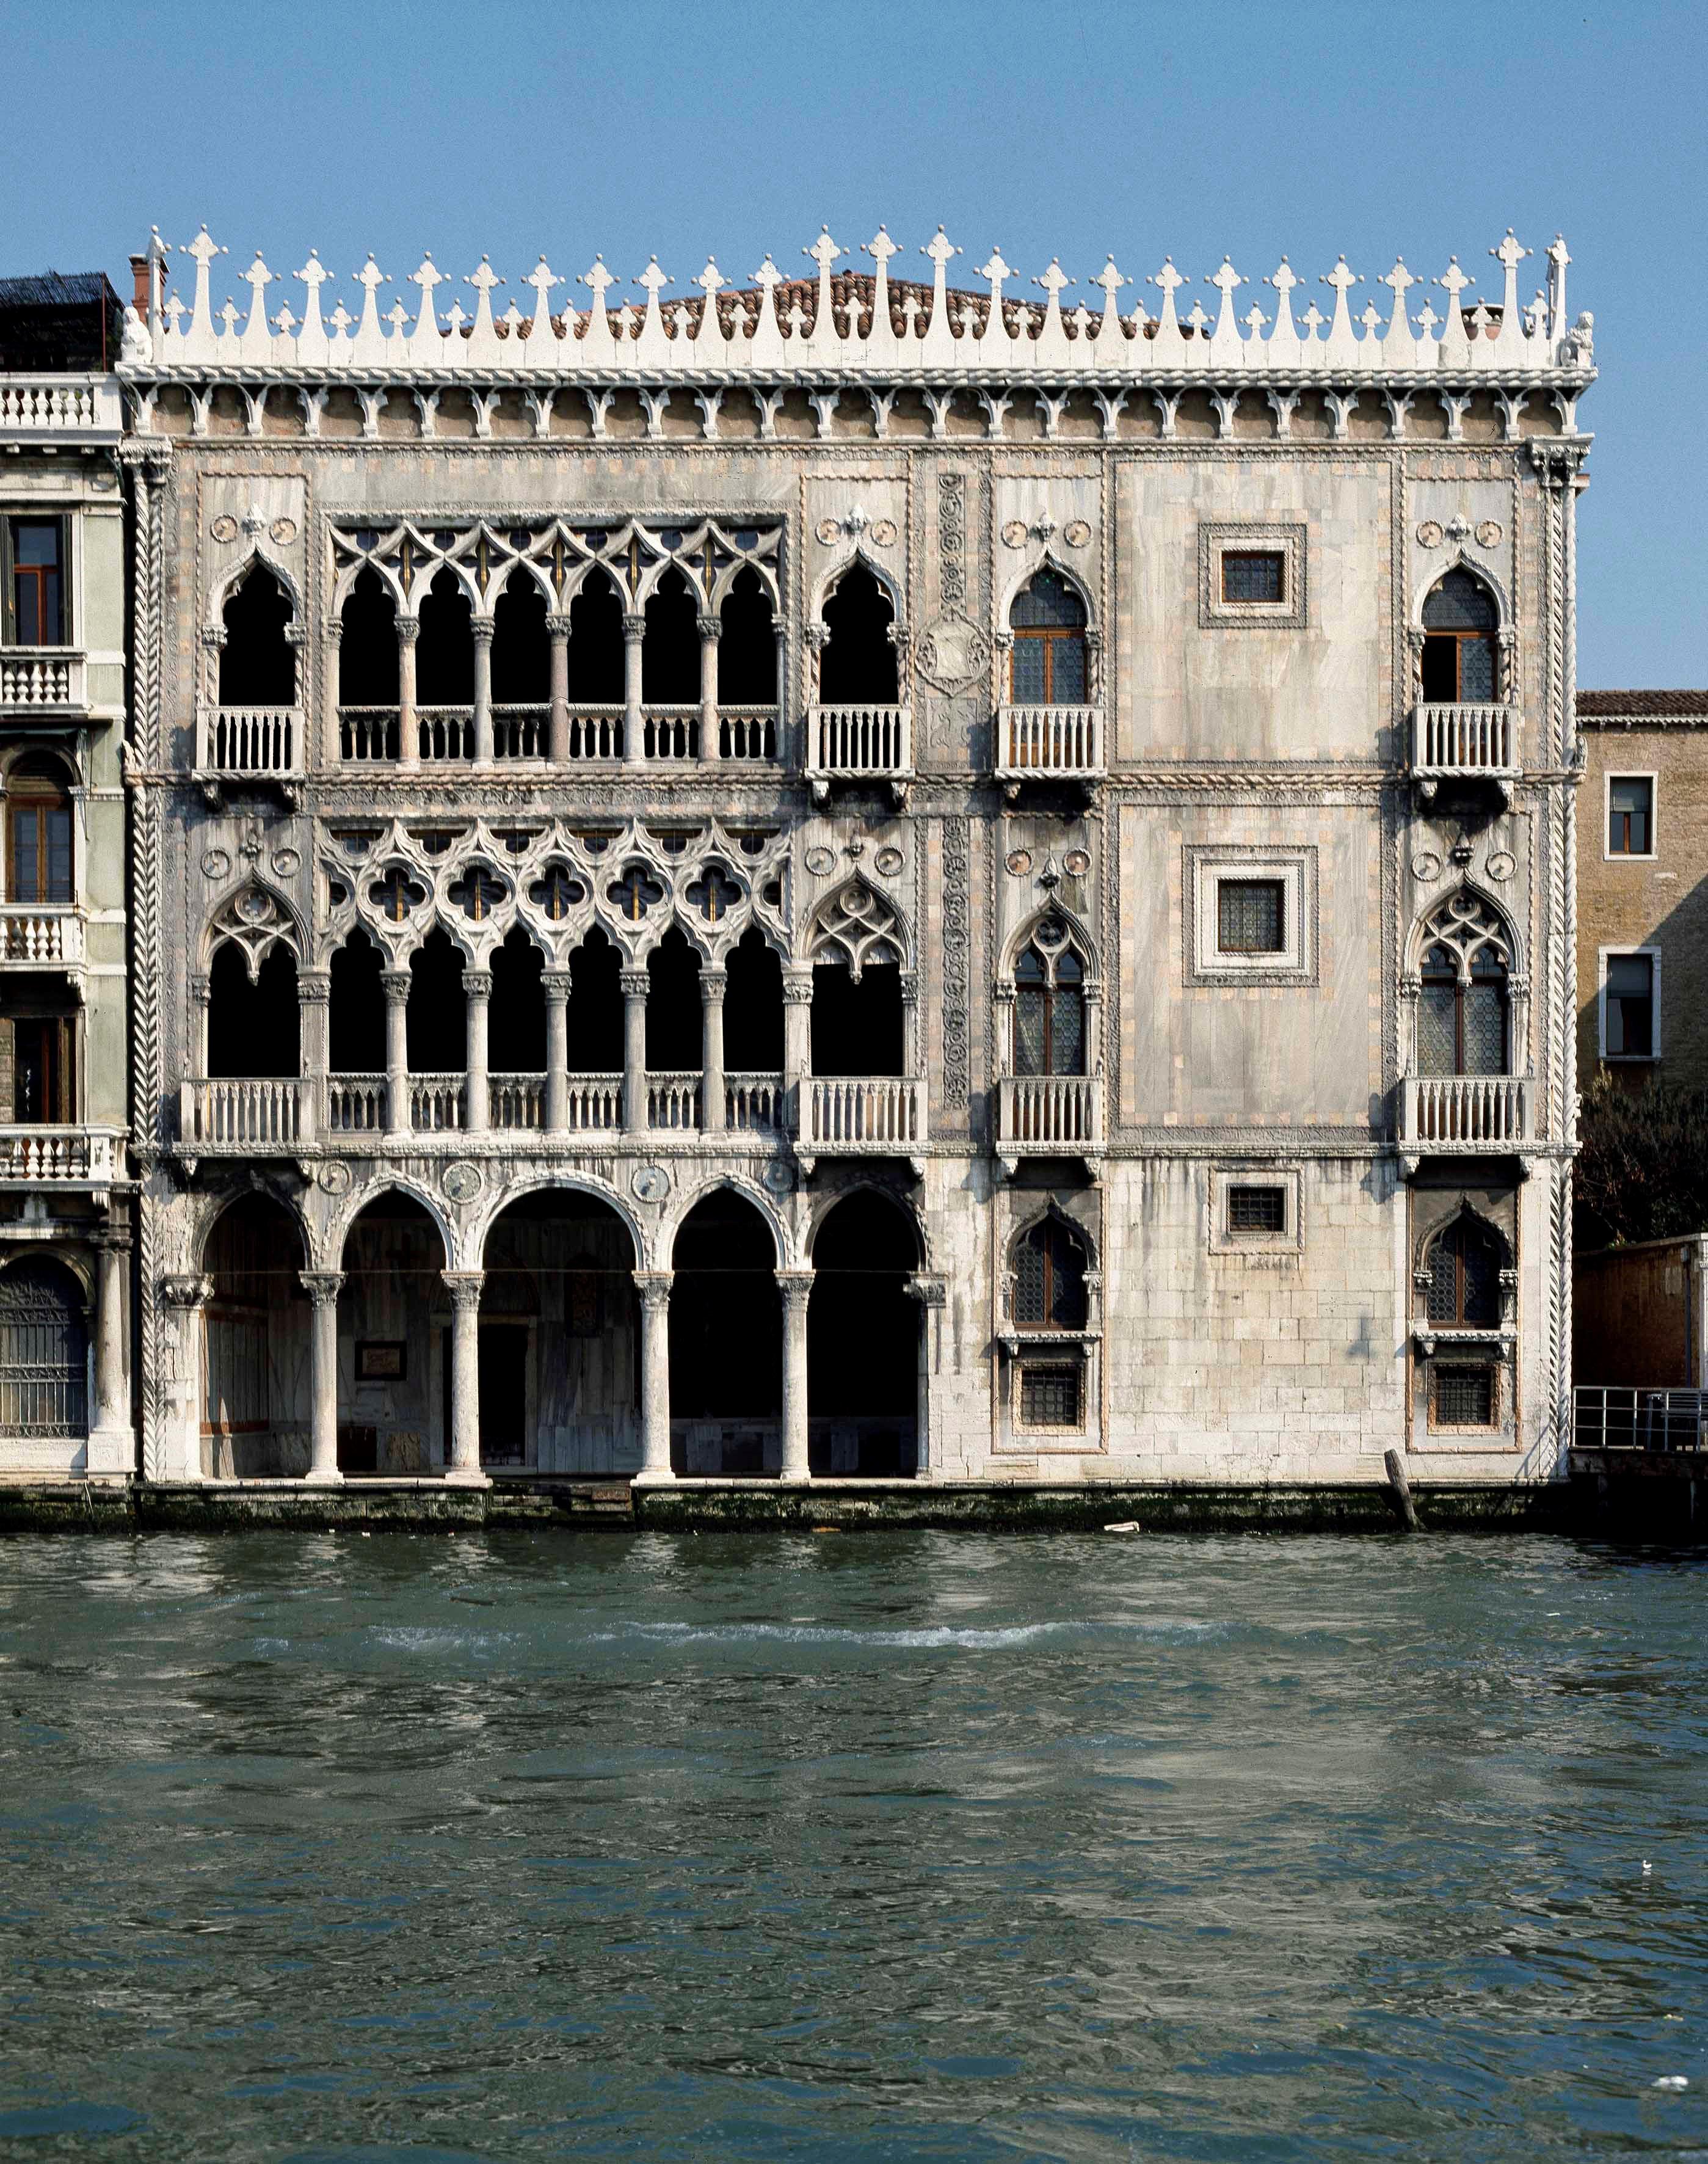 Le edicole di Venezia trasformate in rivendite per Louis Vuitton